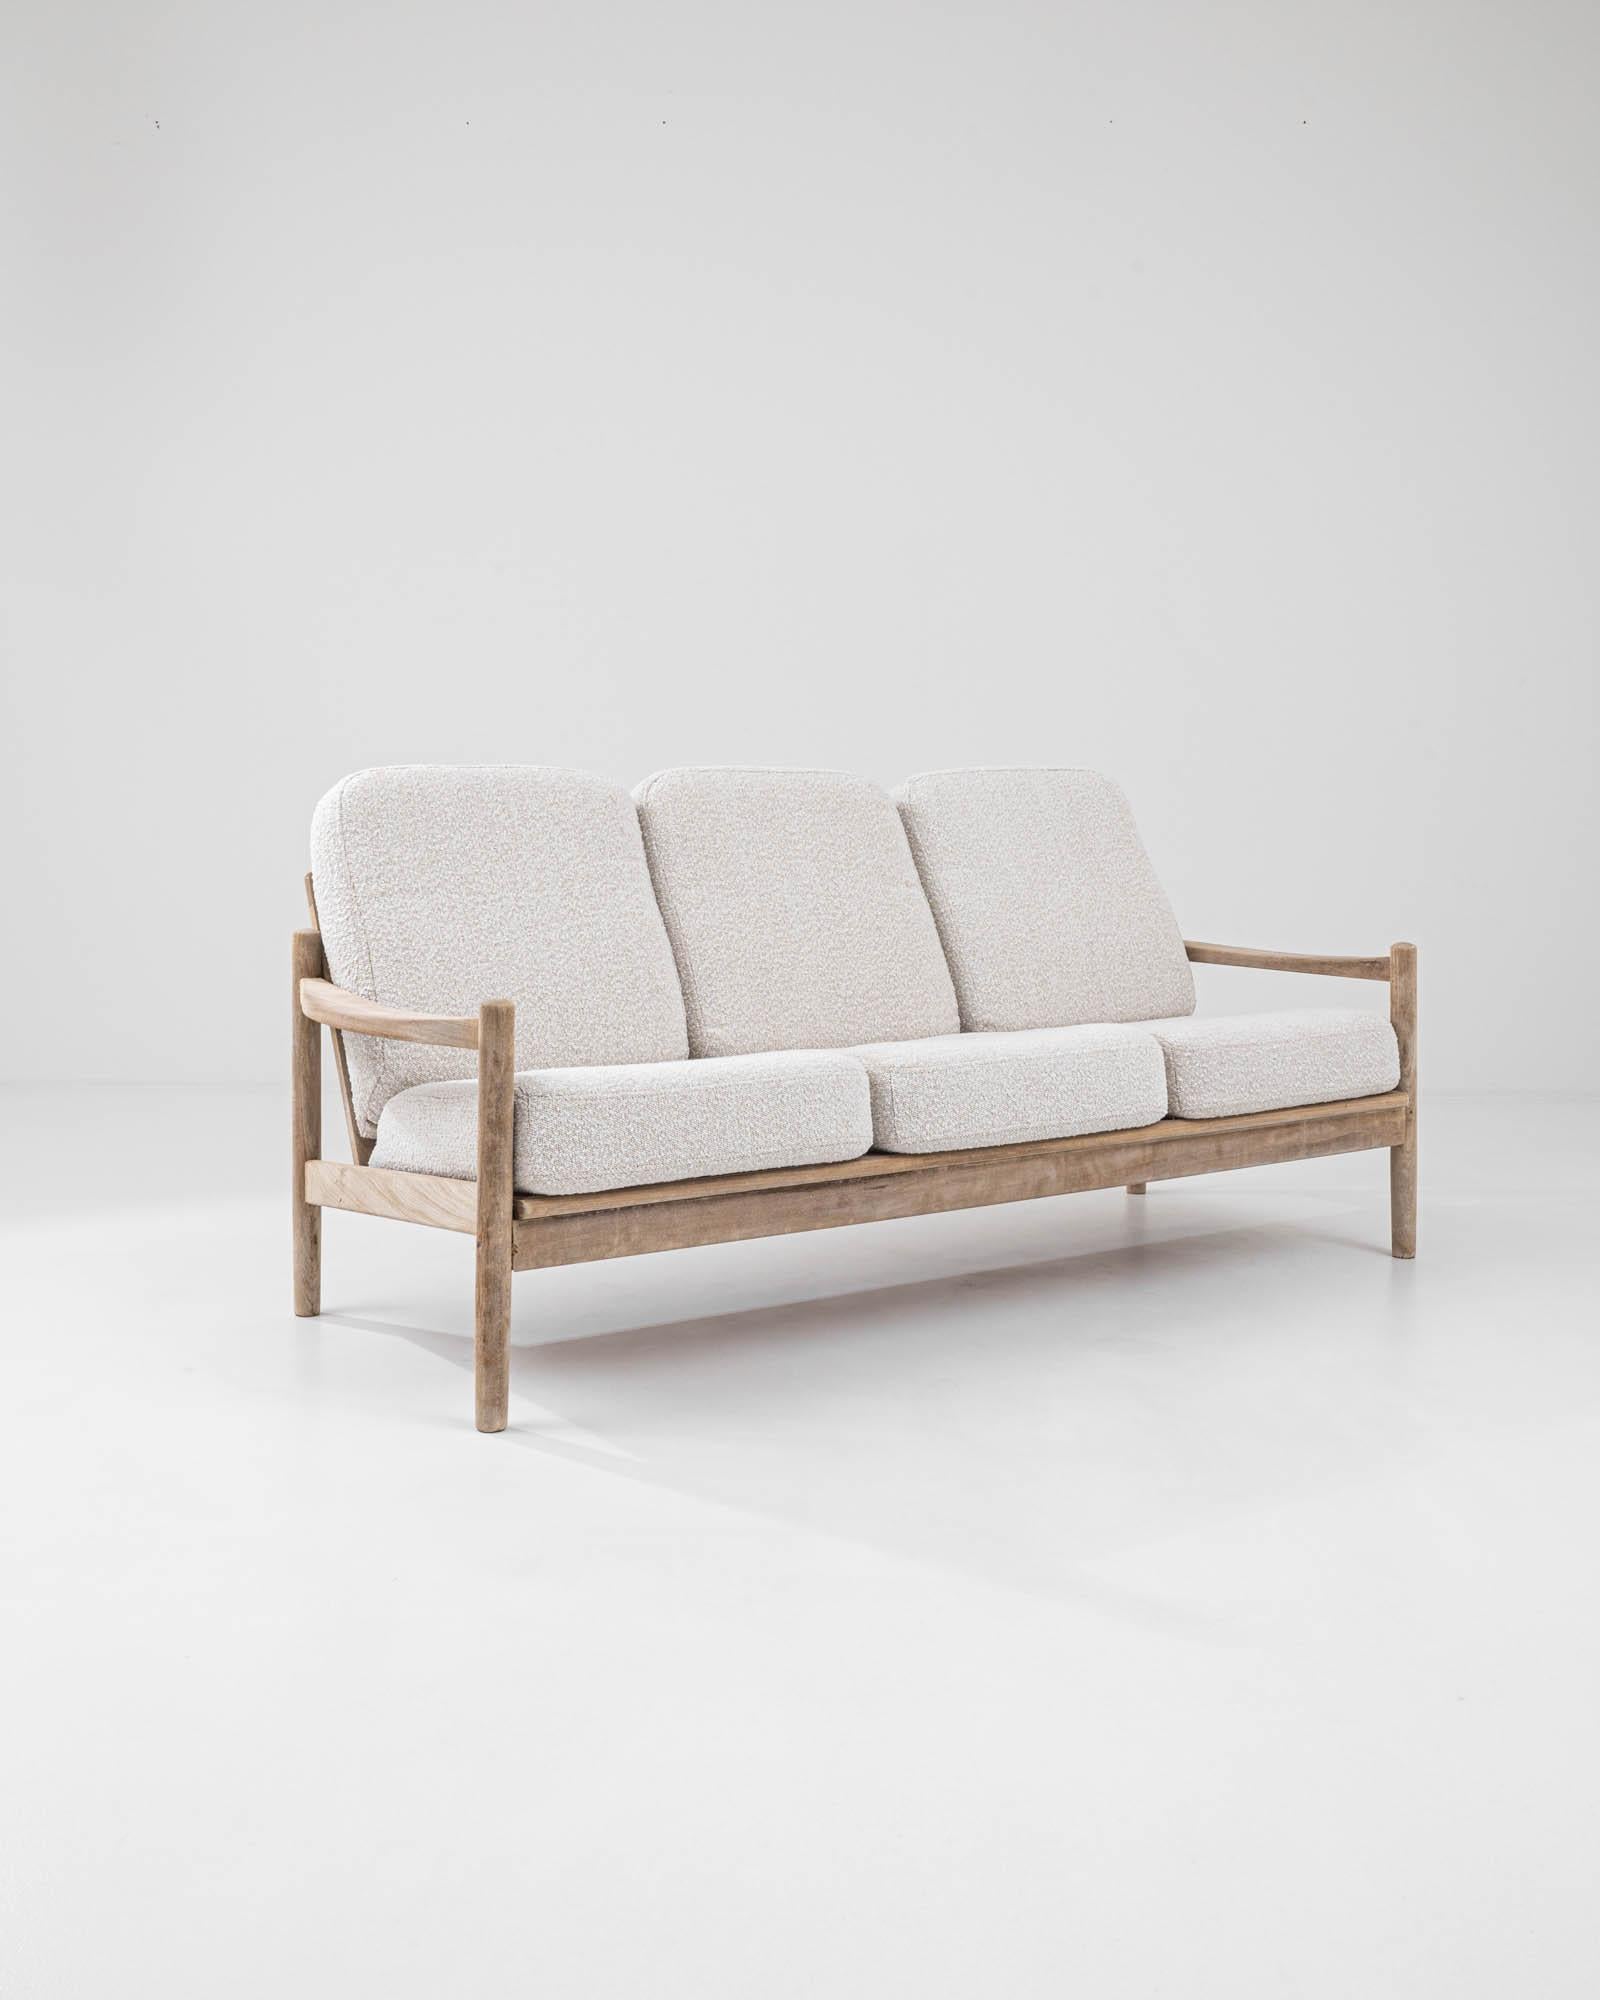 Dieses leichte und elegante Vintage-Holzsofa verkörpert die wohnliche Raffinesse des dänischen modernen Designs. Dieser kunstvoll aus feinem Teakholz gefertigte Dreisitzer aus der Mitte des Jahrhunderts verkörpert die Essenz des skandinavischen